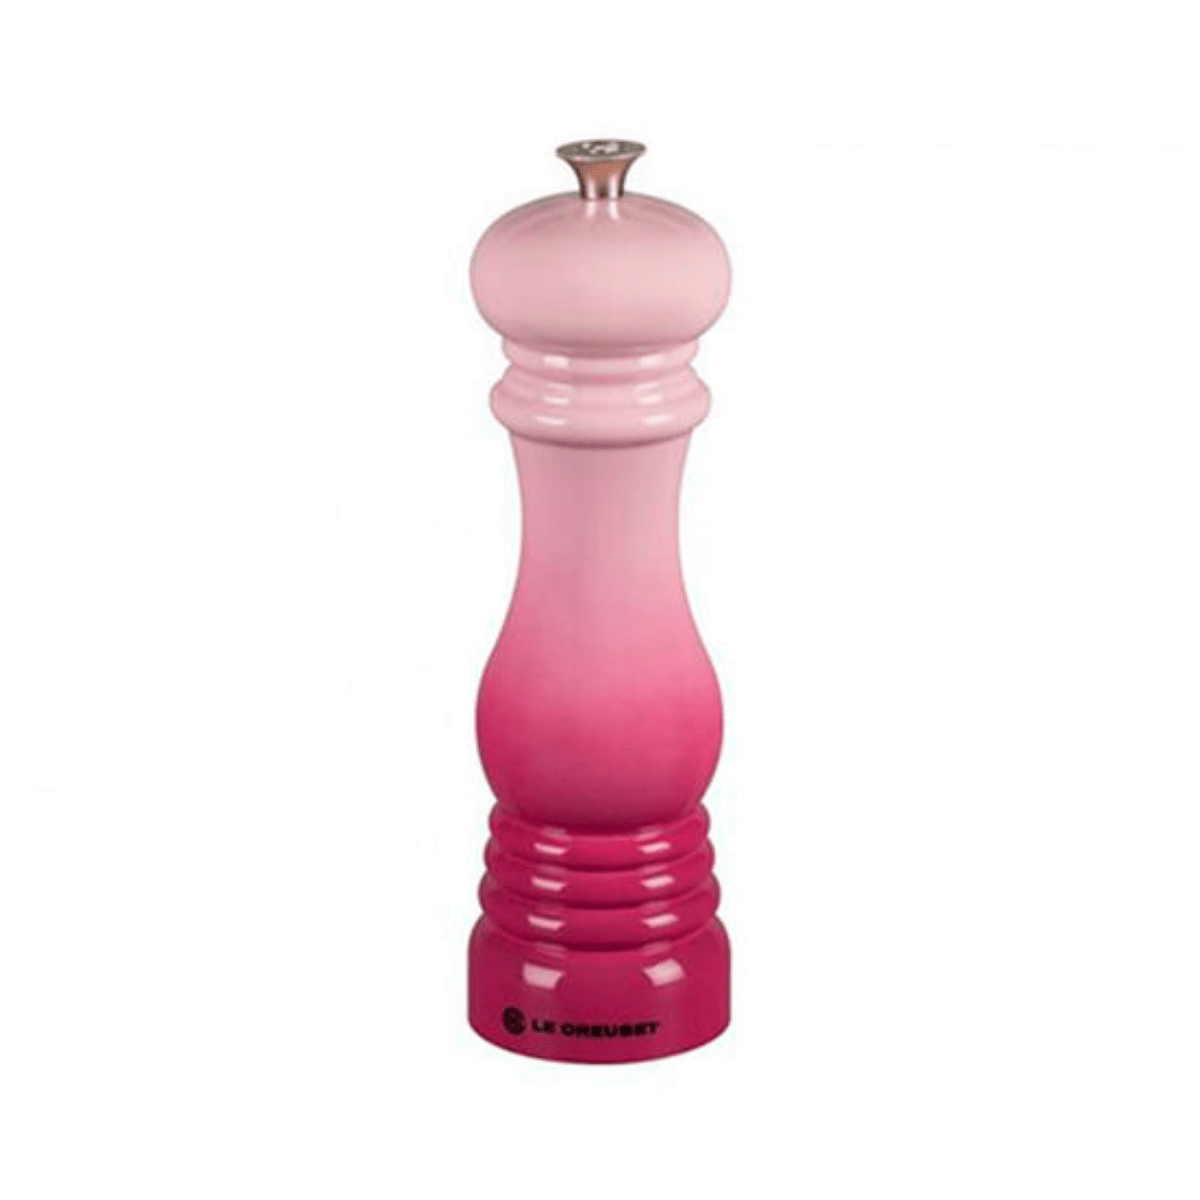 Moedor De Pimenta Cerâmica Rosa  Pink Chiffon Le Creuset - 20 x 6,5 cm